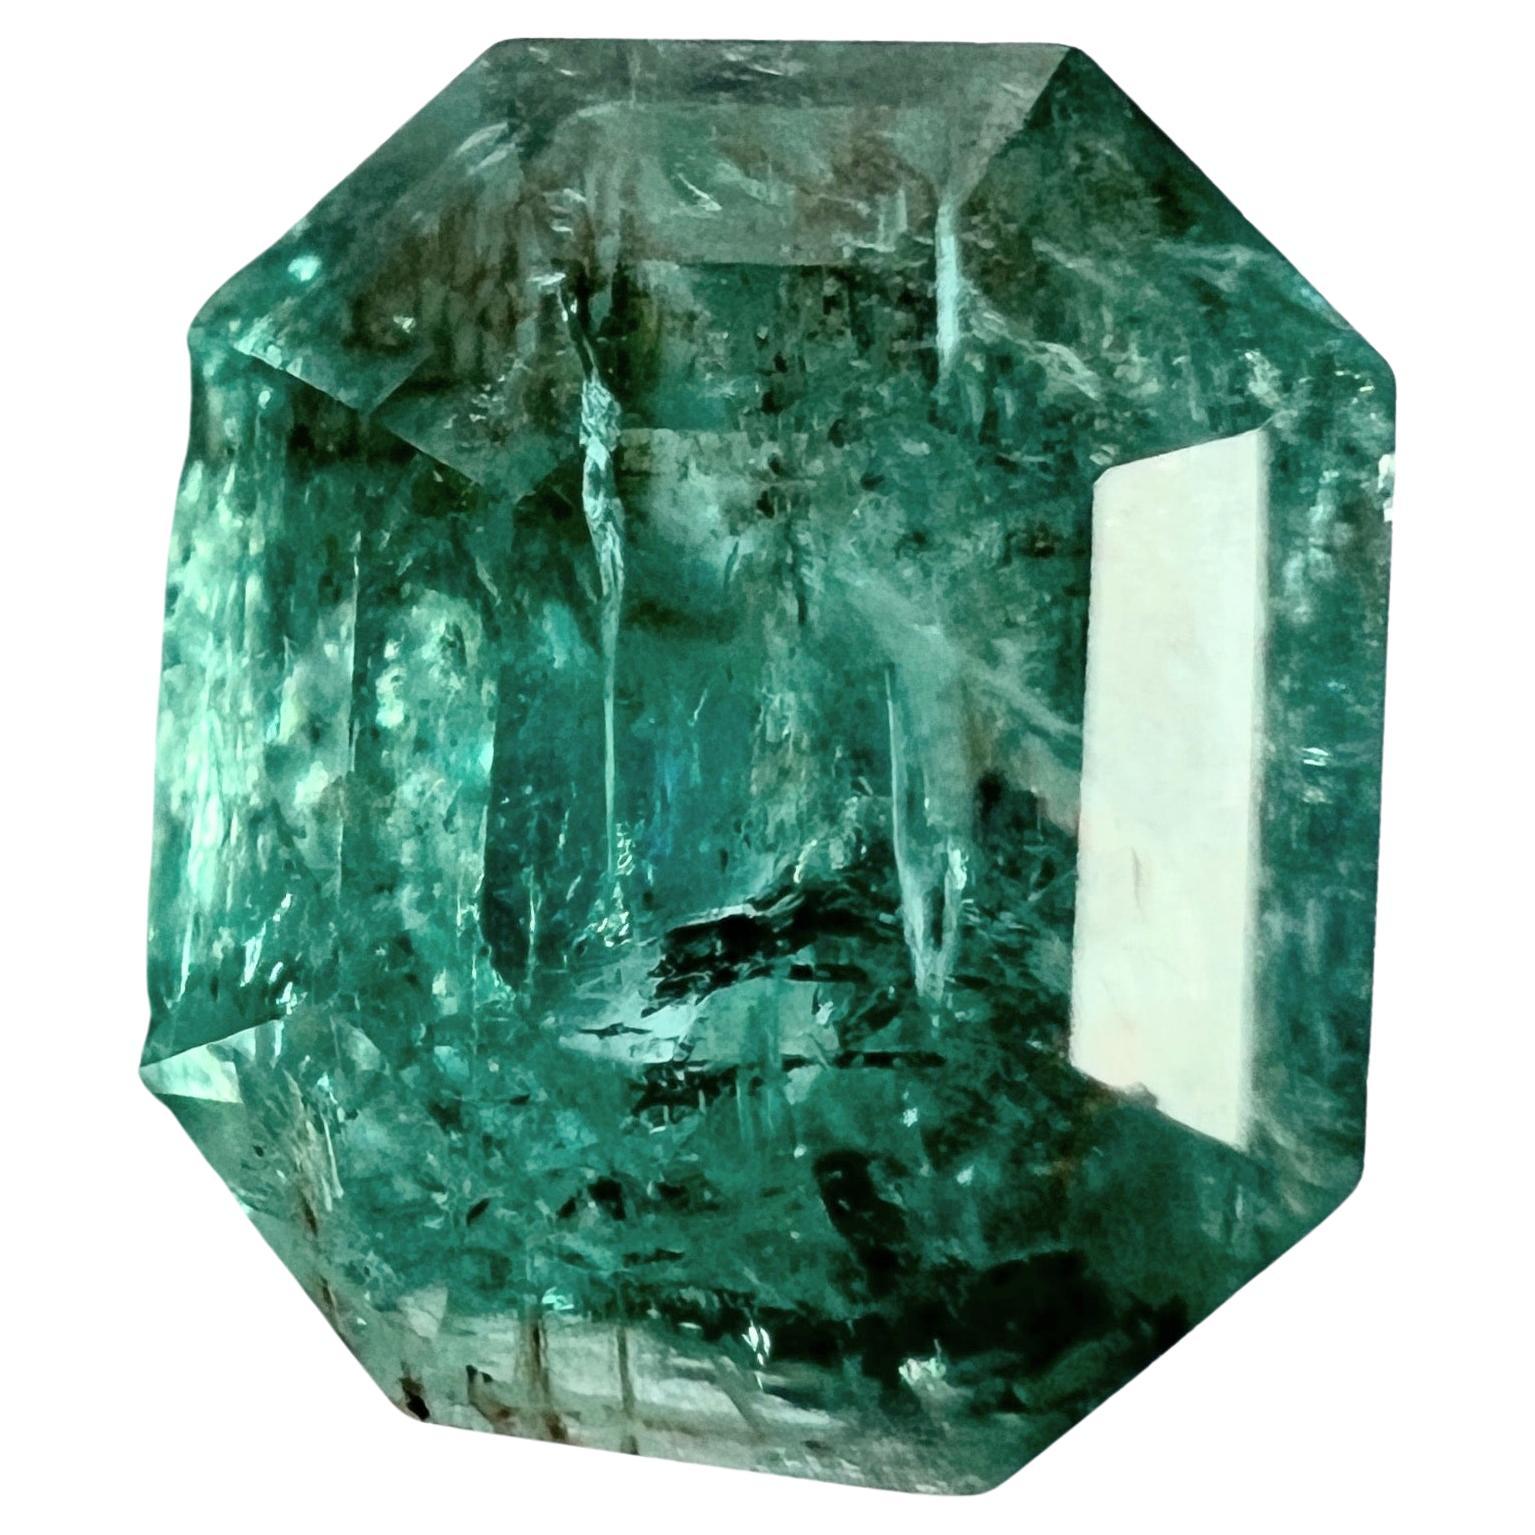 Werfen Sie einen Blick auf diesen 6,5ct ölfreien, natürlichen grünen Smaragd-Edelstein, einen fesselnden, facettierten Stein, der eine erstaunliche Klarheit mit ausgeprägten Einschlüssen verbindet. Dieser Smaragd zelebriert die Kunstfertigkeit der